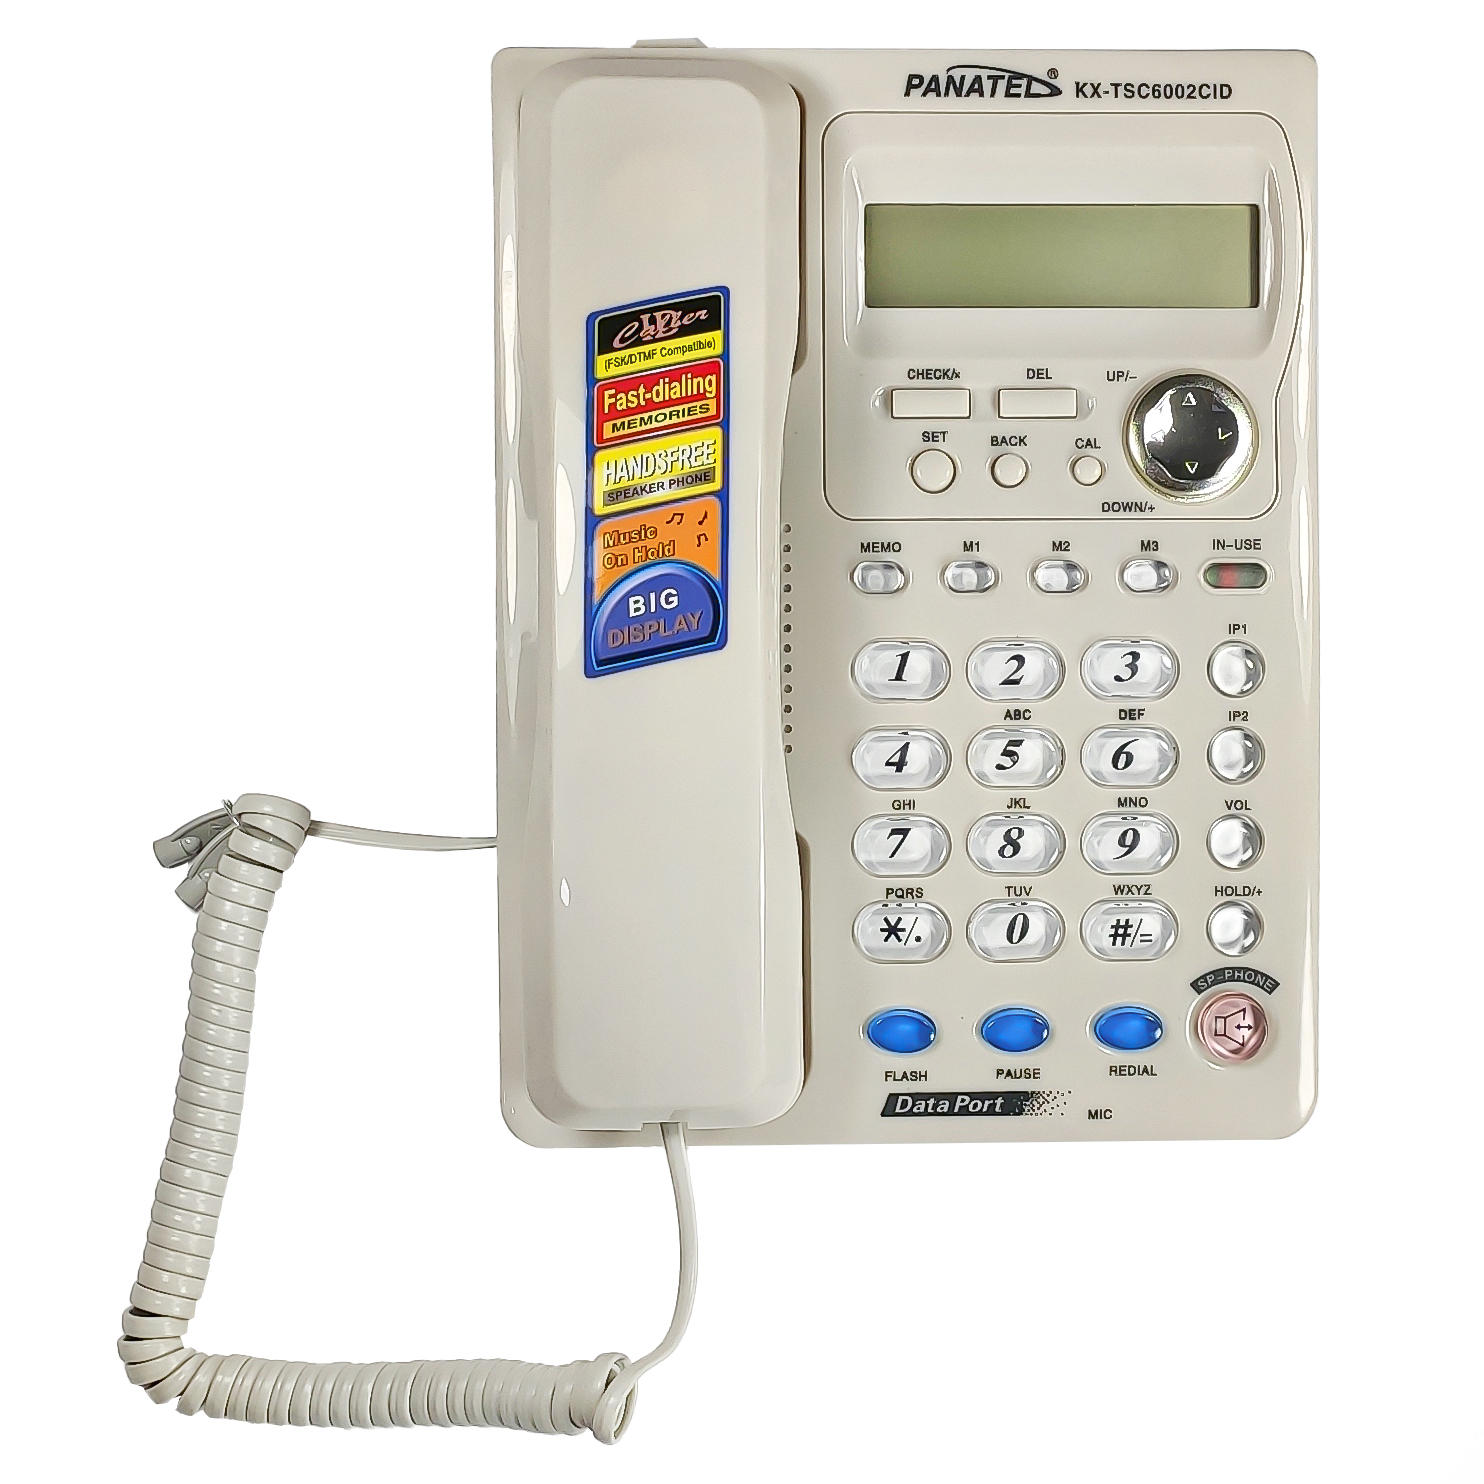 تلفن پاناتل مدل KX-TSC6002CID